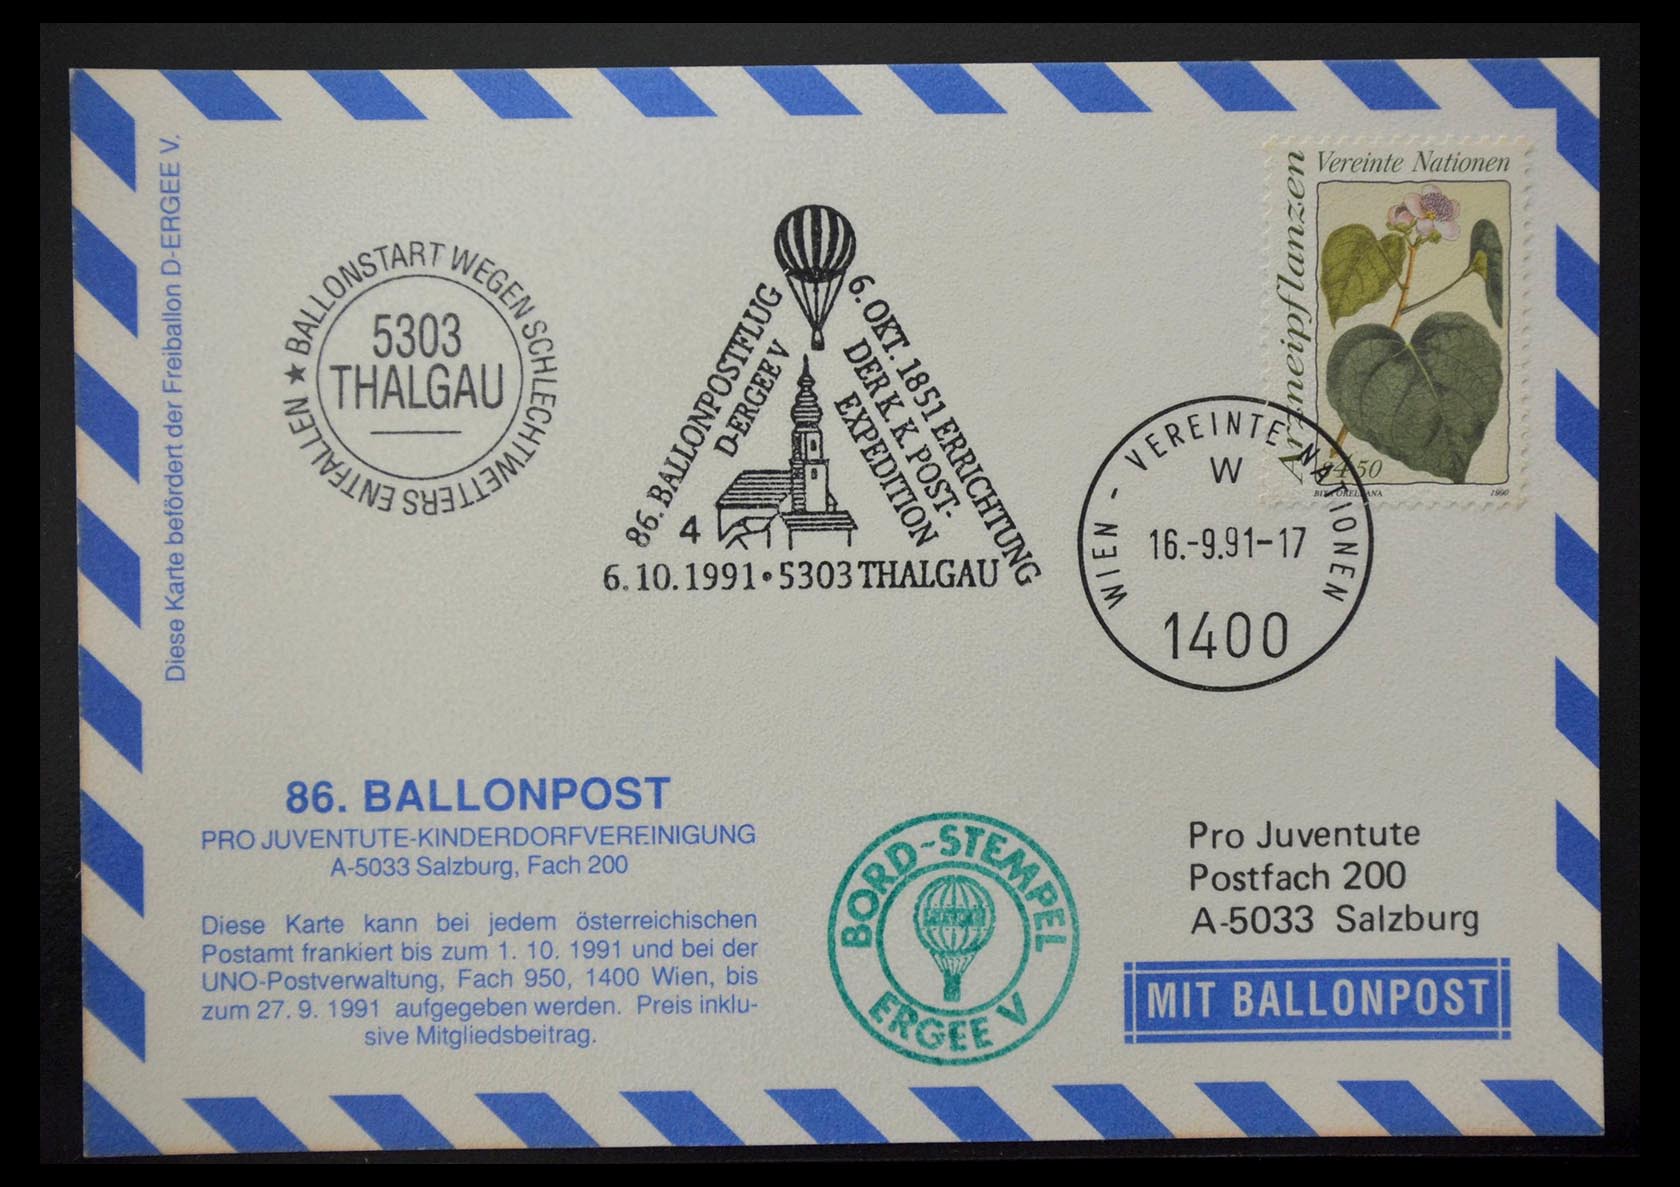 28889 044 - 28889 Ballonpost 1927-2001.